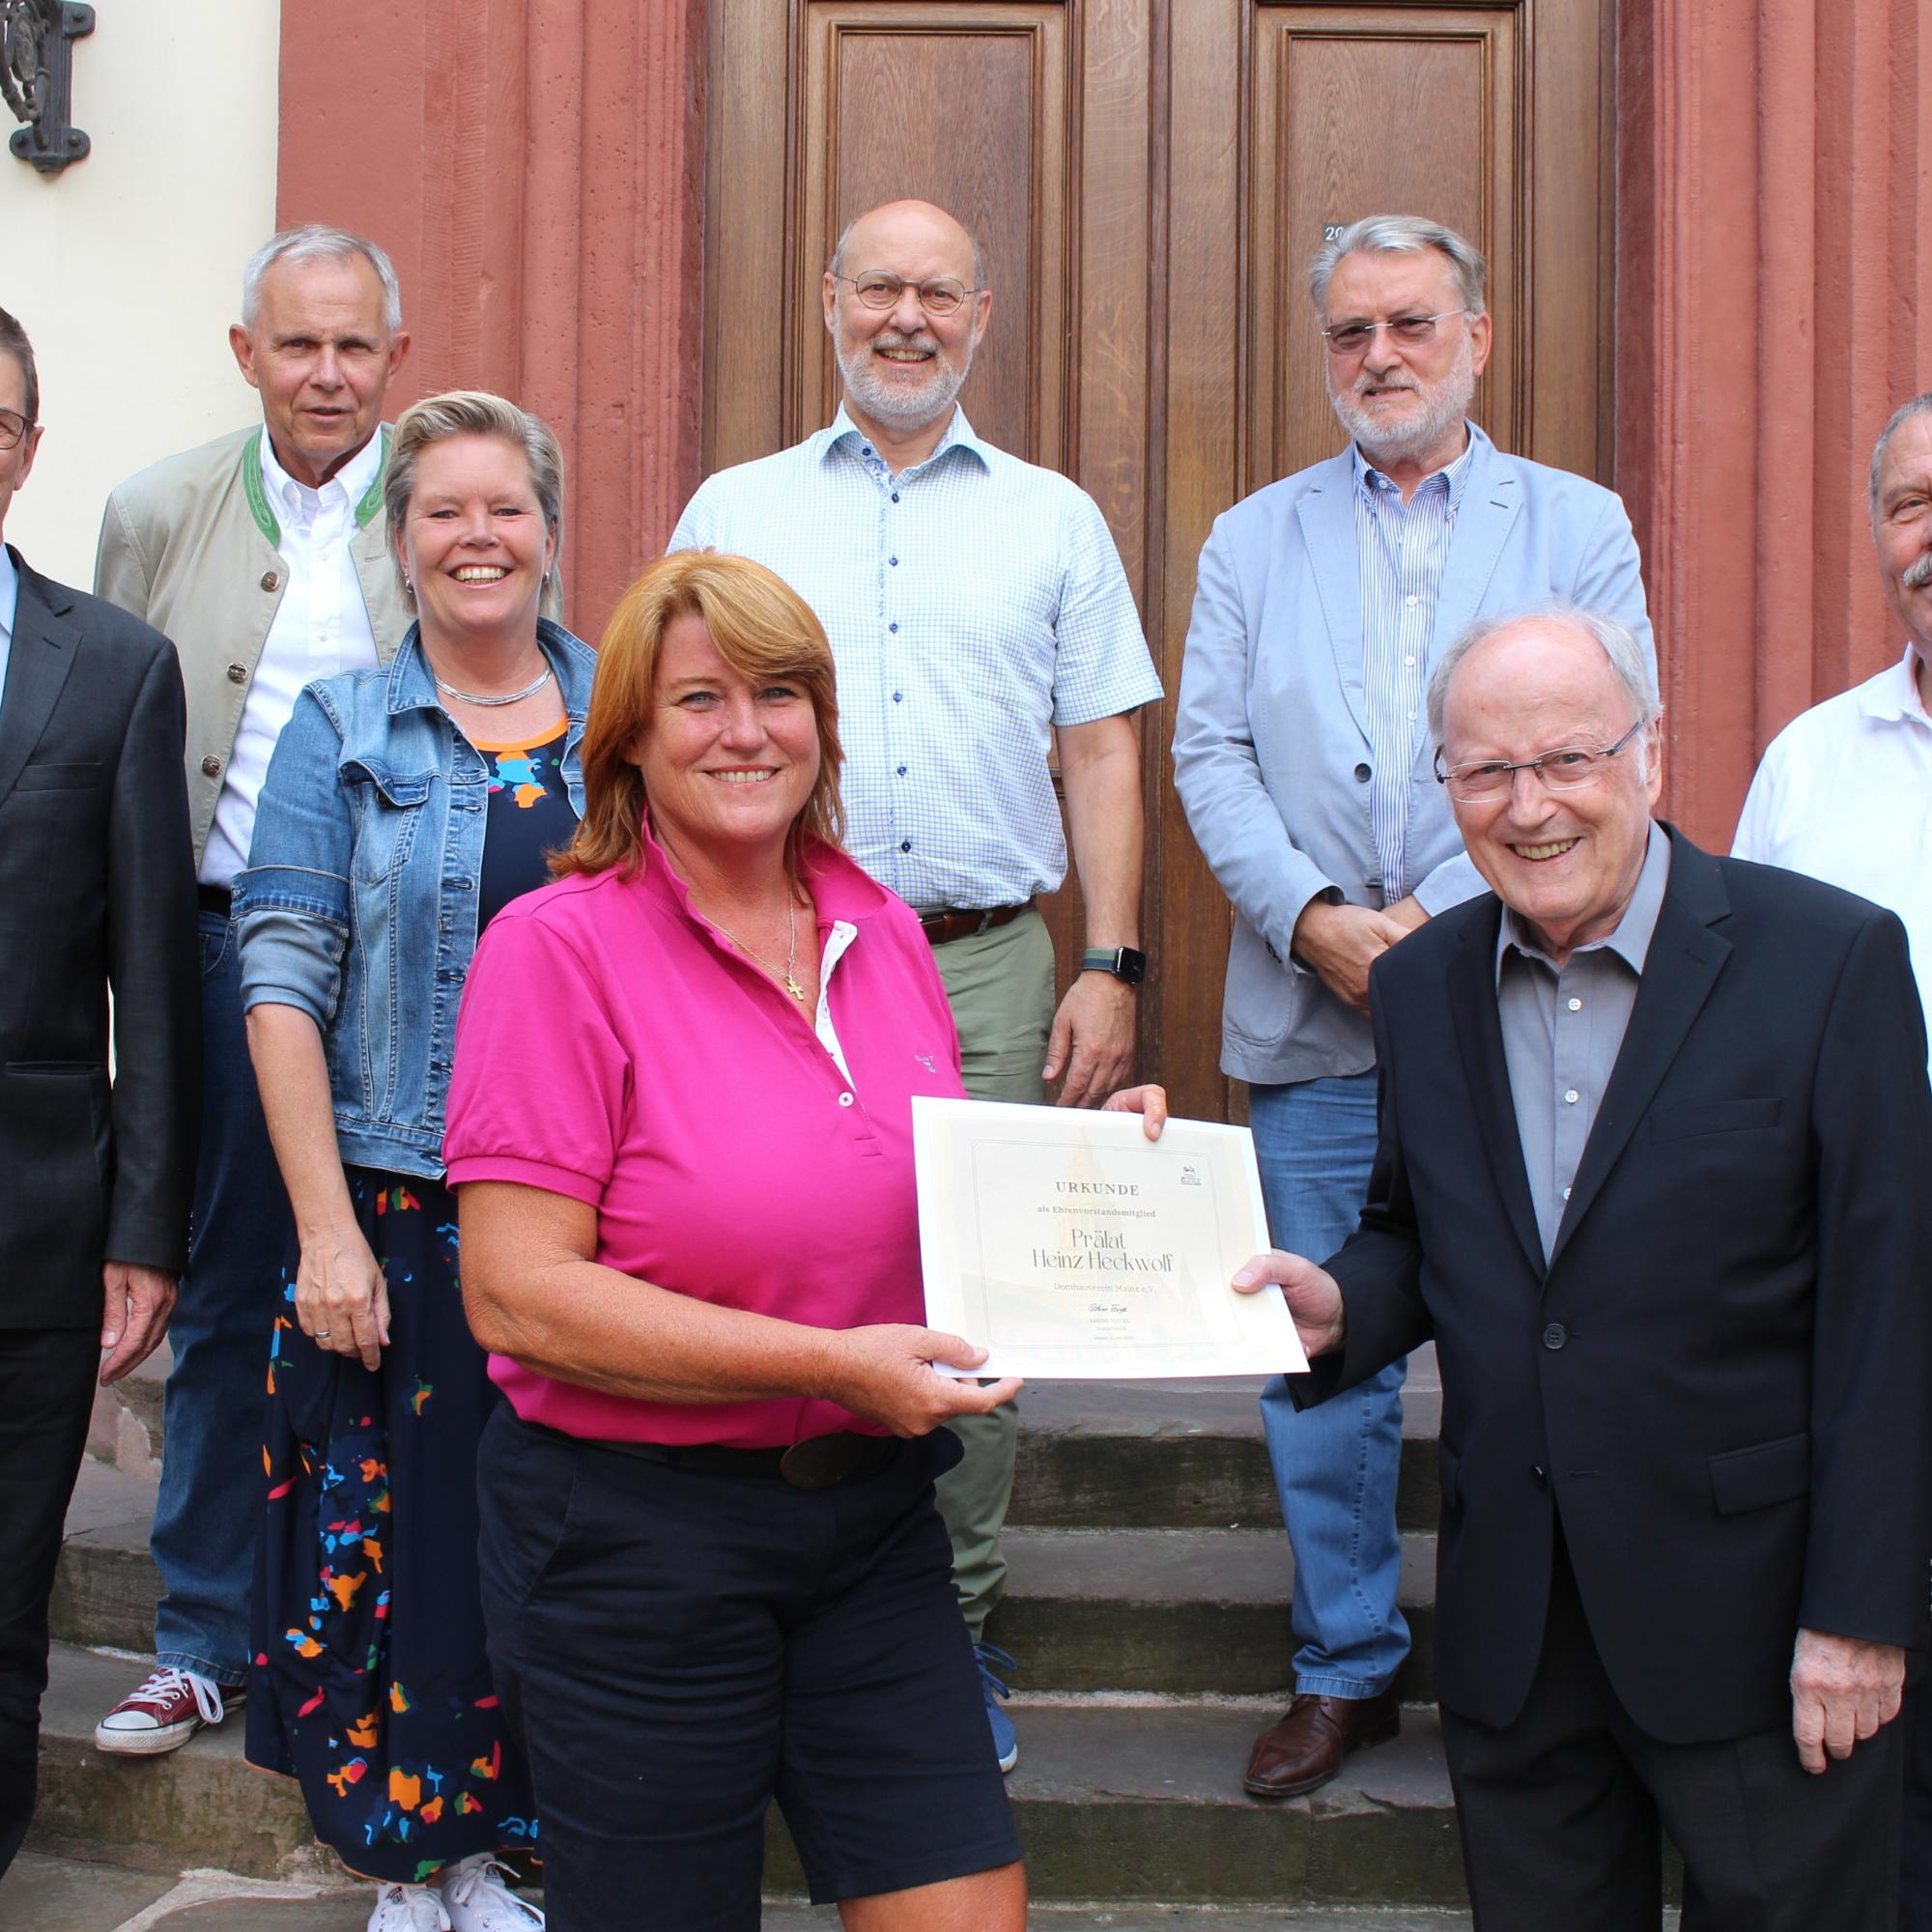 Mainz, 14. Juli 2022: Vor der konstituierenden Vorstandssitzung überreichte Sabine Flegel die Urkunde für das erste Ehrenvorstandsmitglied an den früheren Domdekan Heinz Heckwolf.